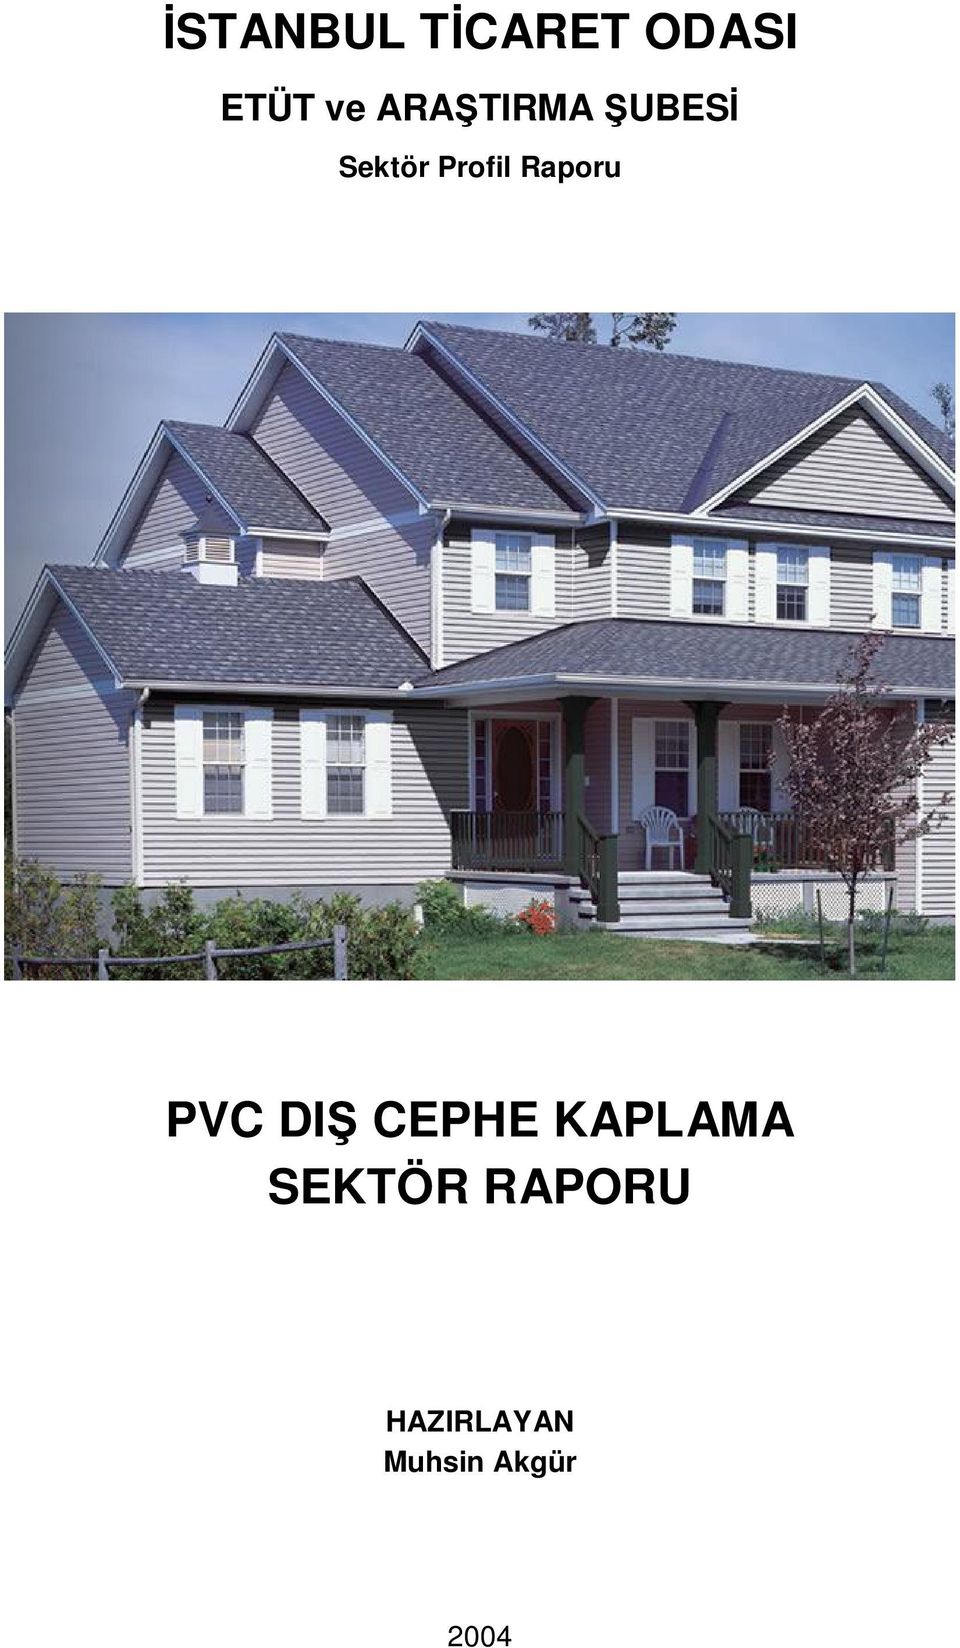 Raporu PVC DI CEPHE KAPLAMA